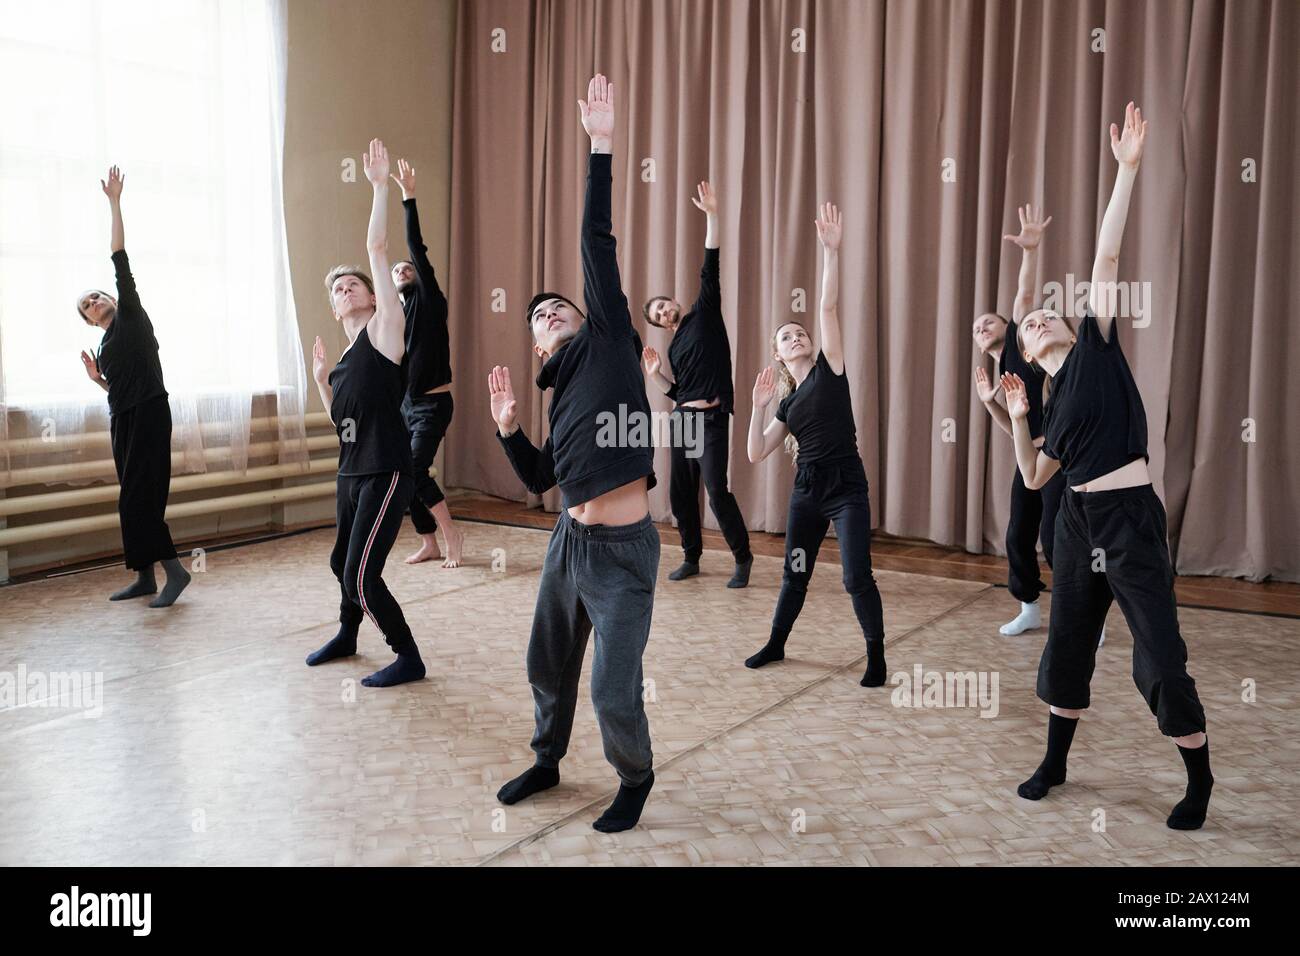 Los jóvenes y las mujeres usan negra ensayan su nuevo baile contemporáneo en estudio Fotografía de - Alamy